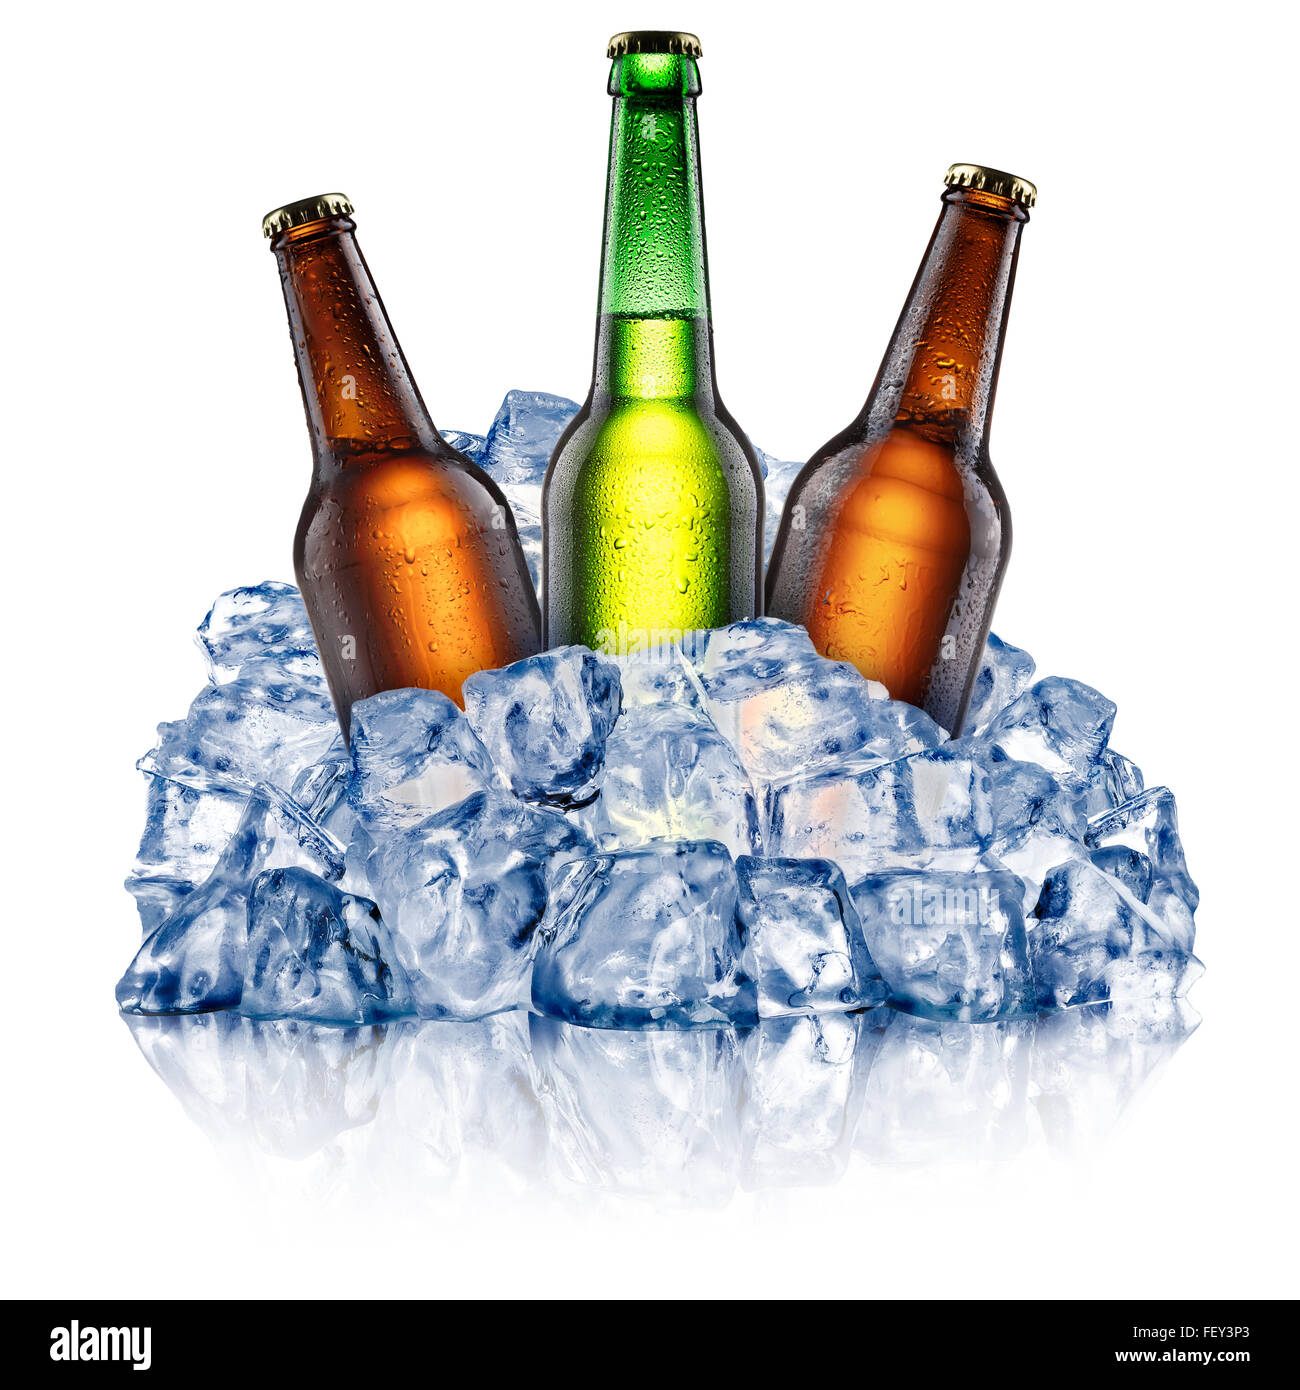 Grünen und braunen Bierflaschen in eine grobe zerstoßenes Eis abkühlen. Beschneidungspfade Stockfoto